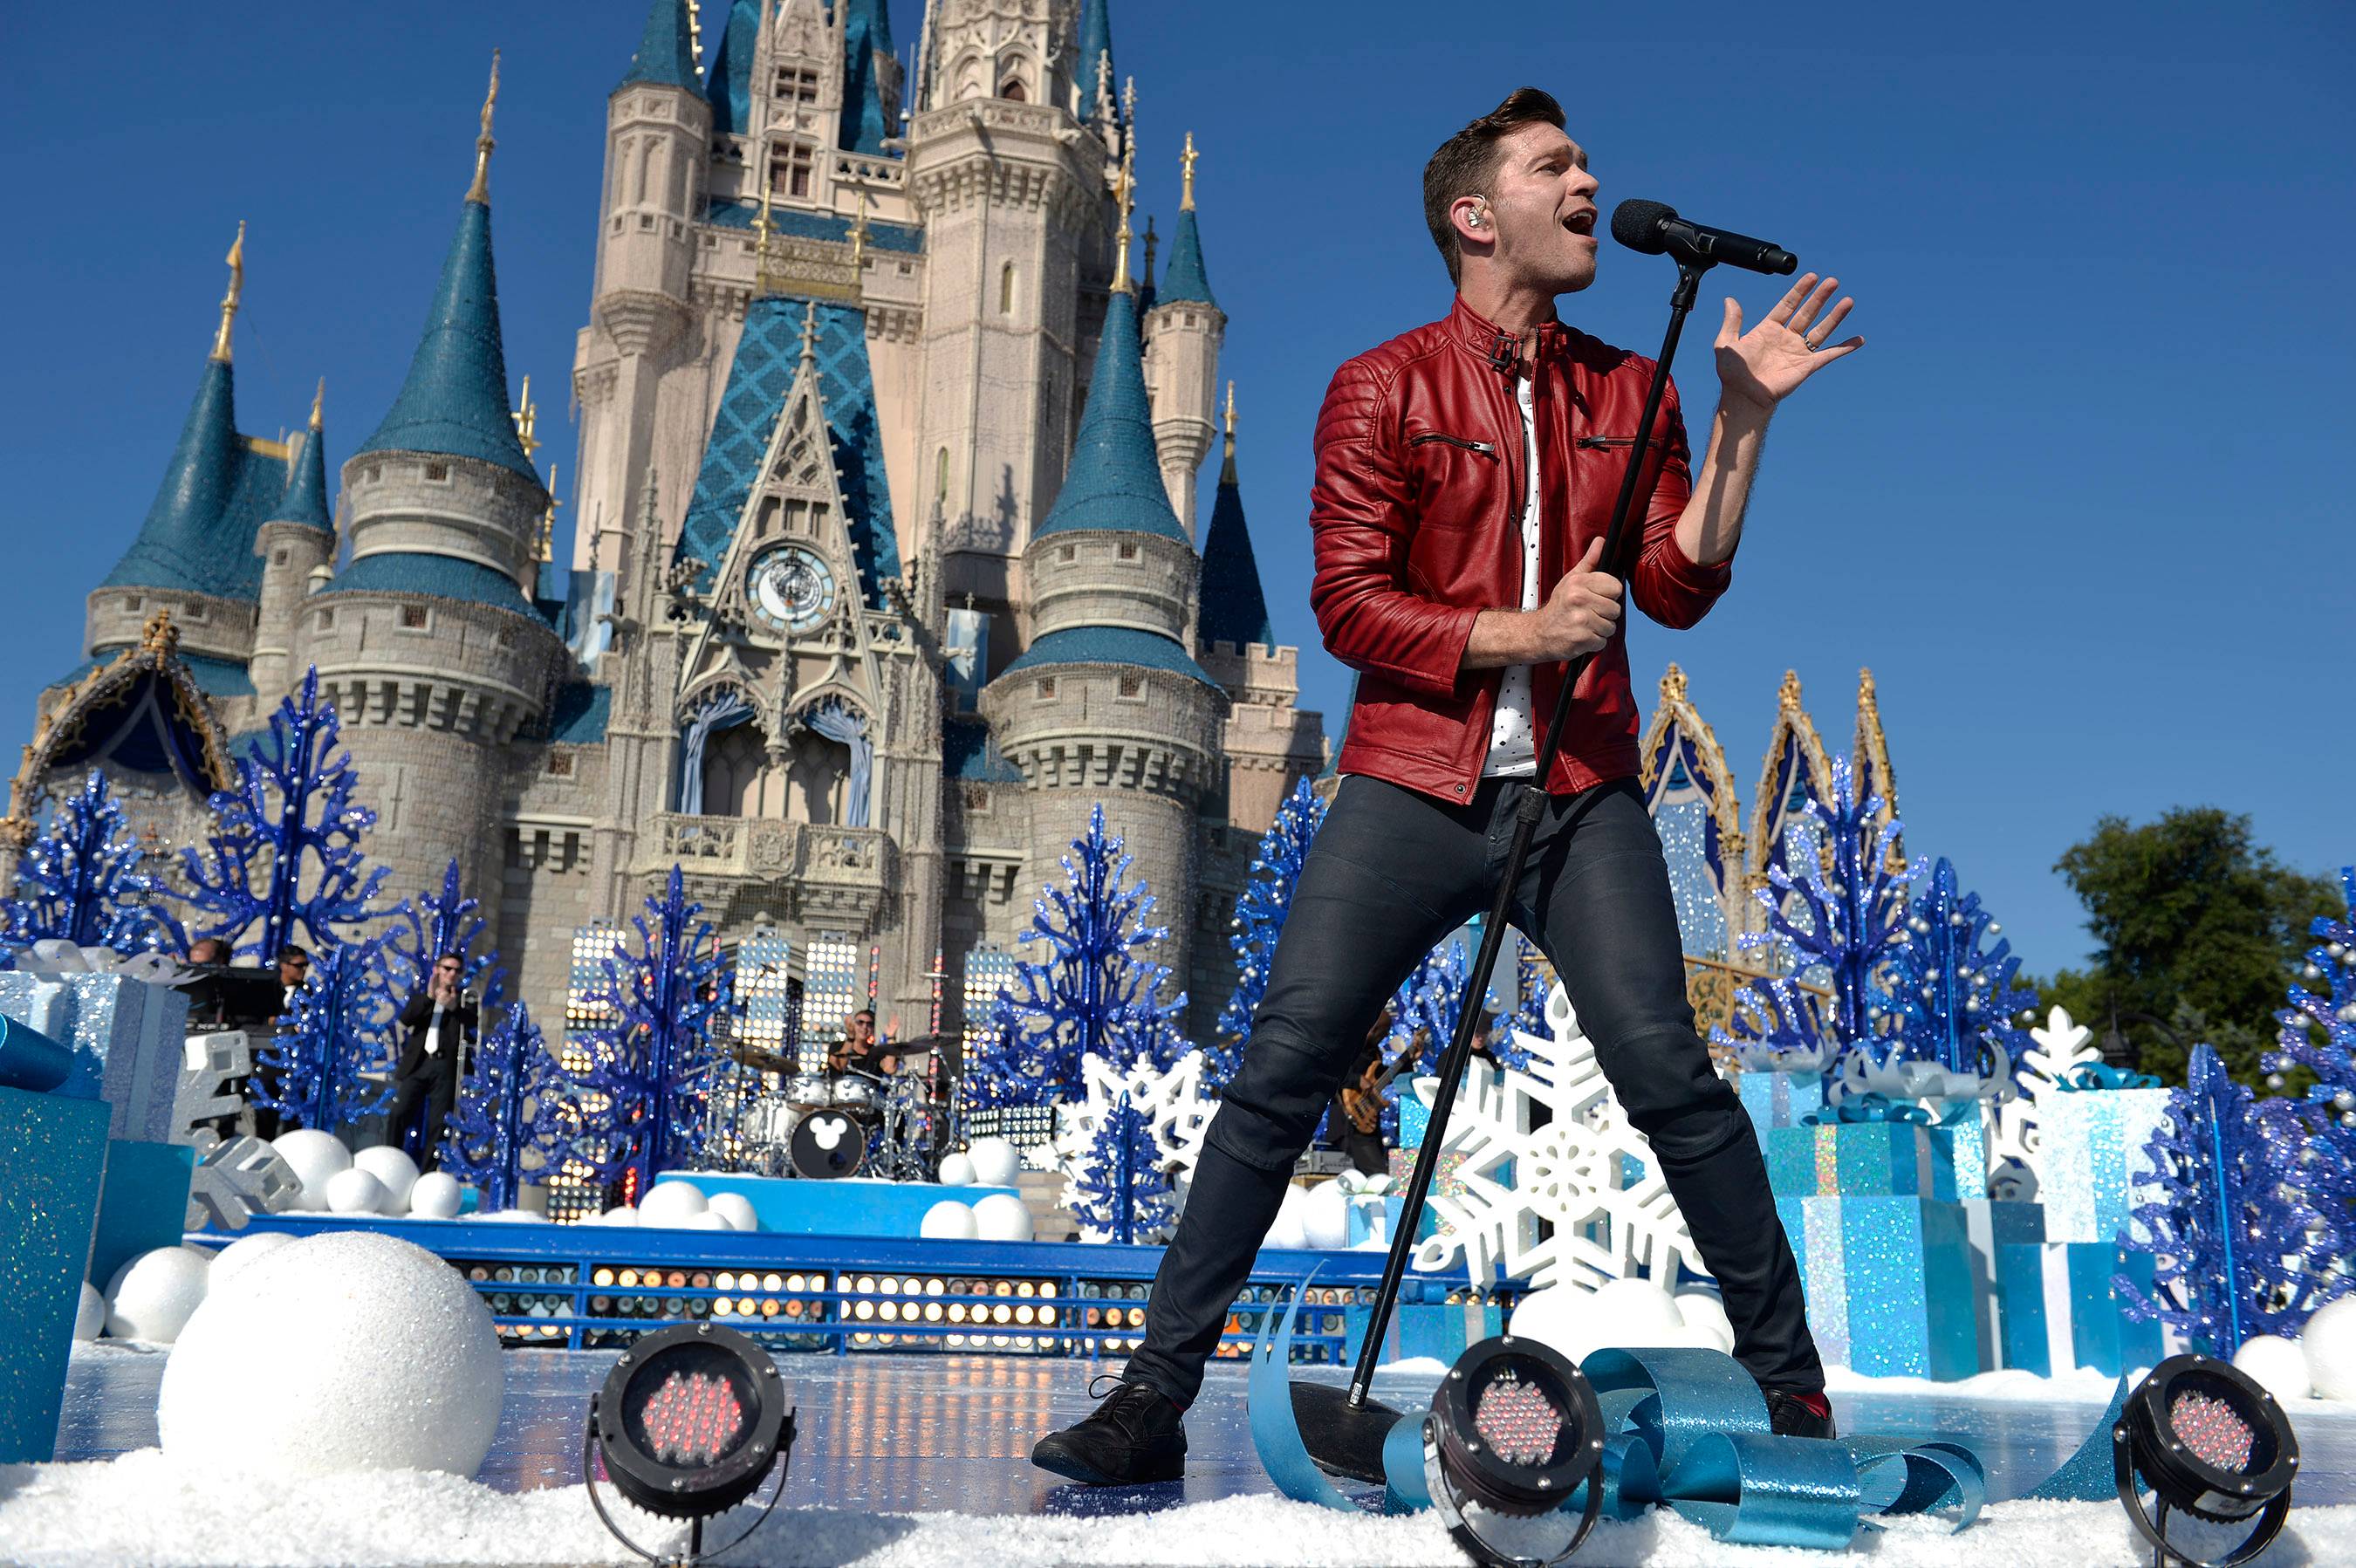 Disney Parks Unforgettable Christmas Celebration performances